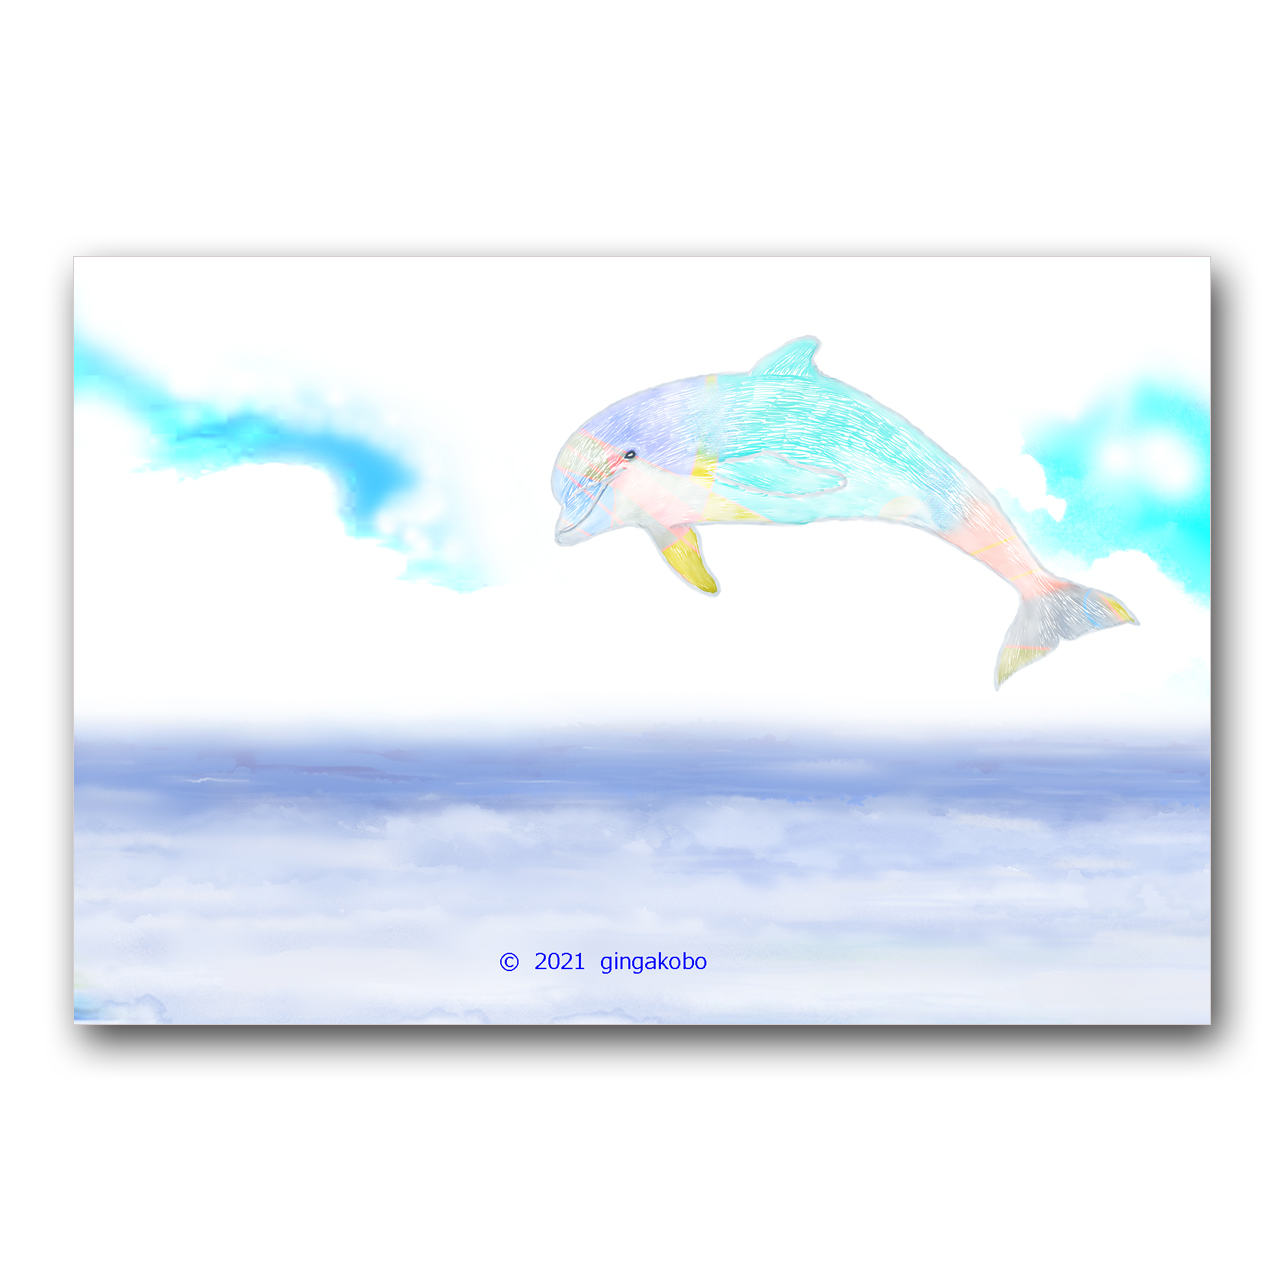 イルカくん 元気だねえ 海 イルカ ほっこり癒しのイラストポストカード2枚組no 1401 Iichi ハンドメイド クラフト作品 手仕事品の通販